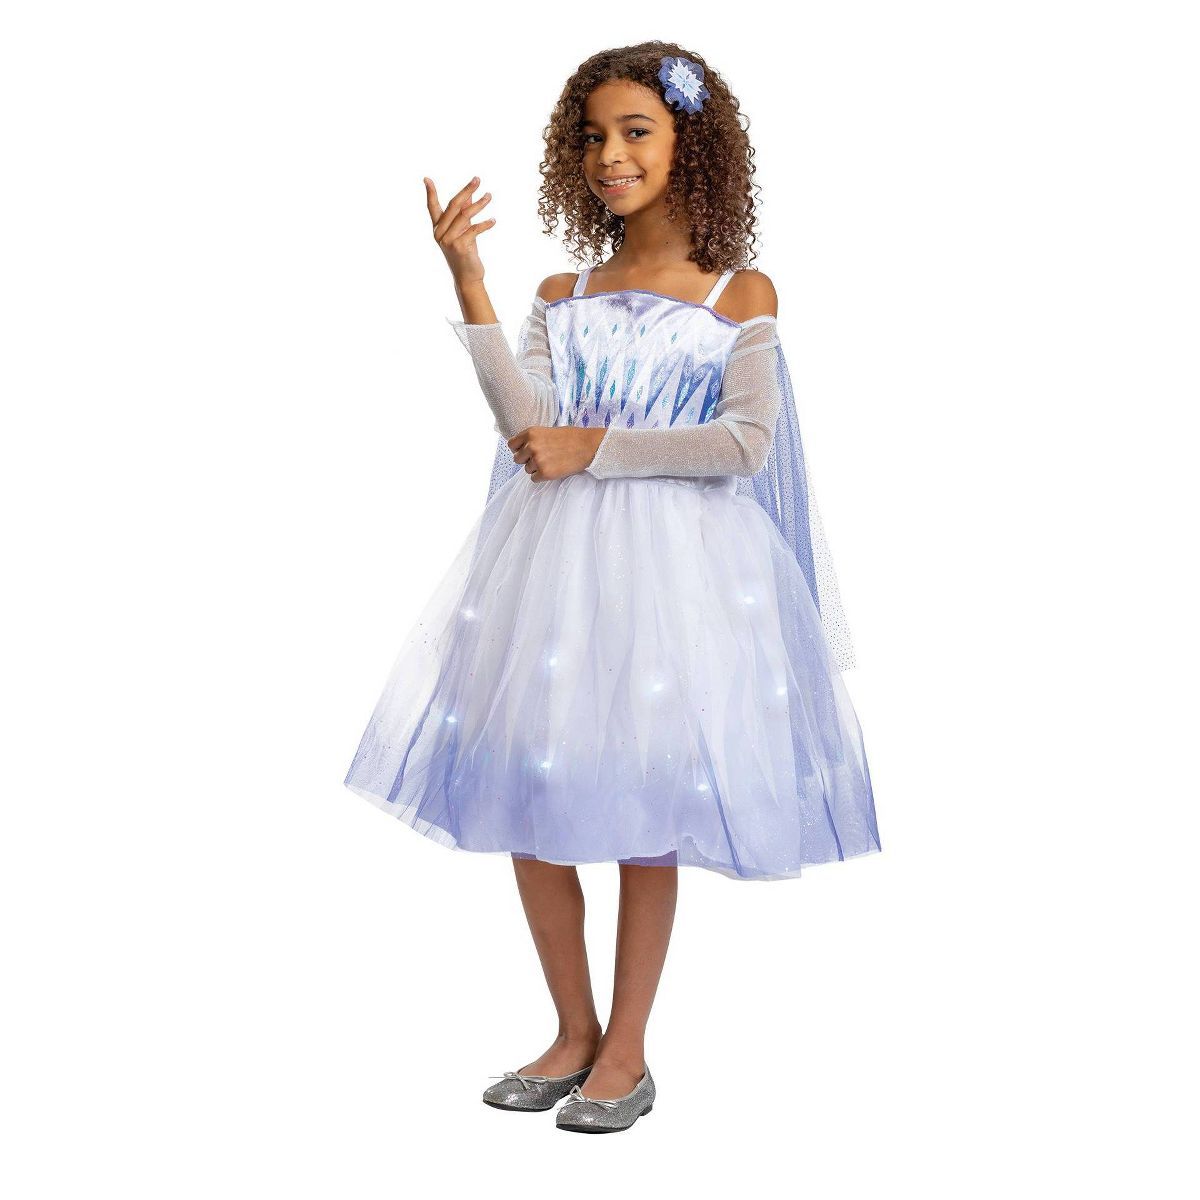 Kids' Disney Frozen Elsa Deluxe Light Up Halloween Costume Dress with Headpiece S (4-6x) | Target